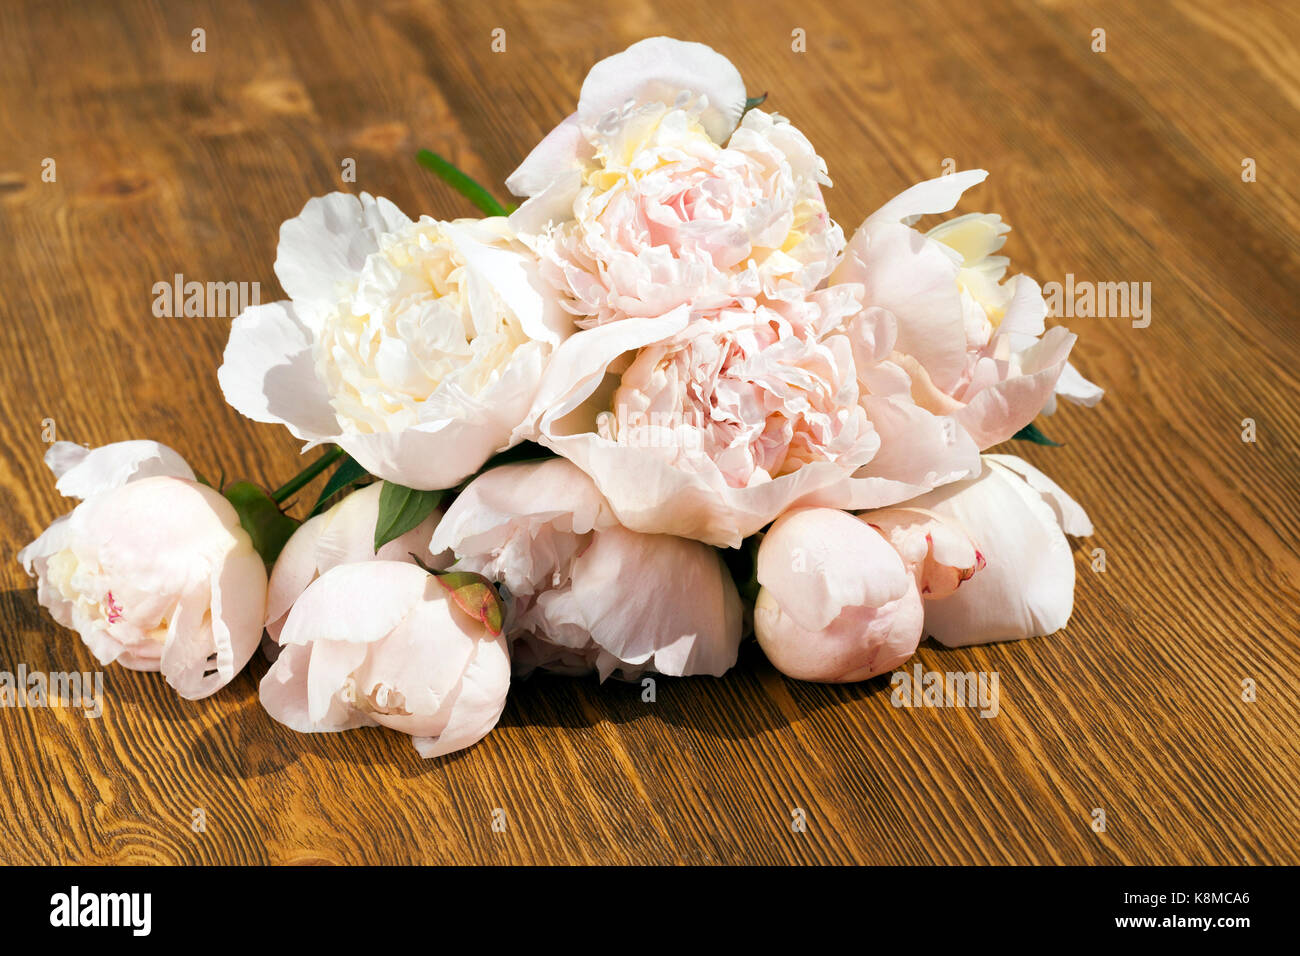 Ein Blumenstrauß der Feder Pfingstrosen, liegend auf einer Holz-  Oberfläche. Foto close up Stockfotografie - Alamy